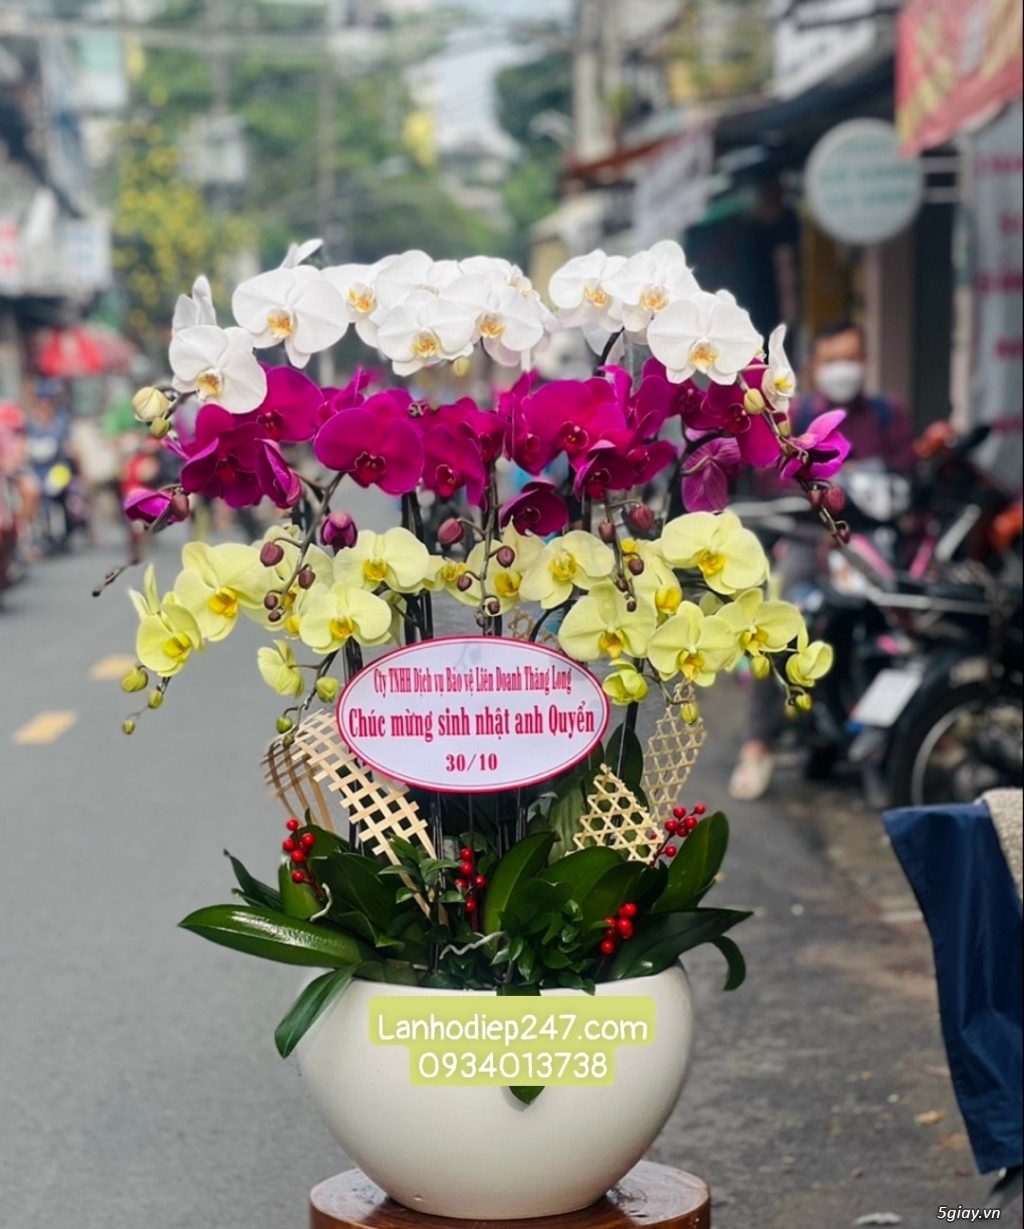 Những mẫu hoa lan đẹp nhất tặng khai trương ý nghĩa tại Hoa Lan 24/7 - 19